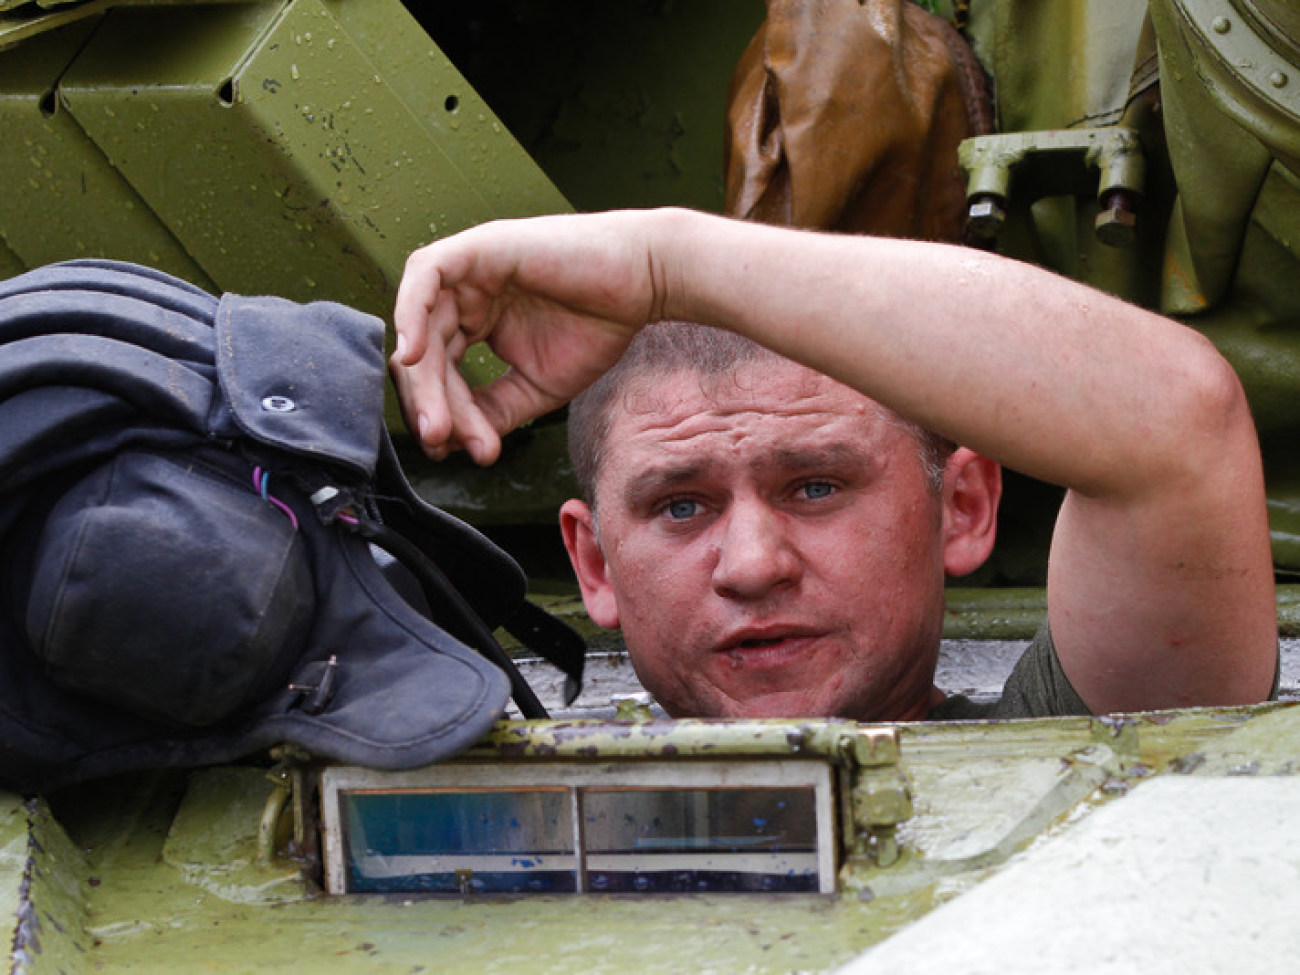 Соревнования на лучший танковый взвод Вооруженных Сил Украины, 3 сентября 2012г.